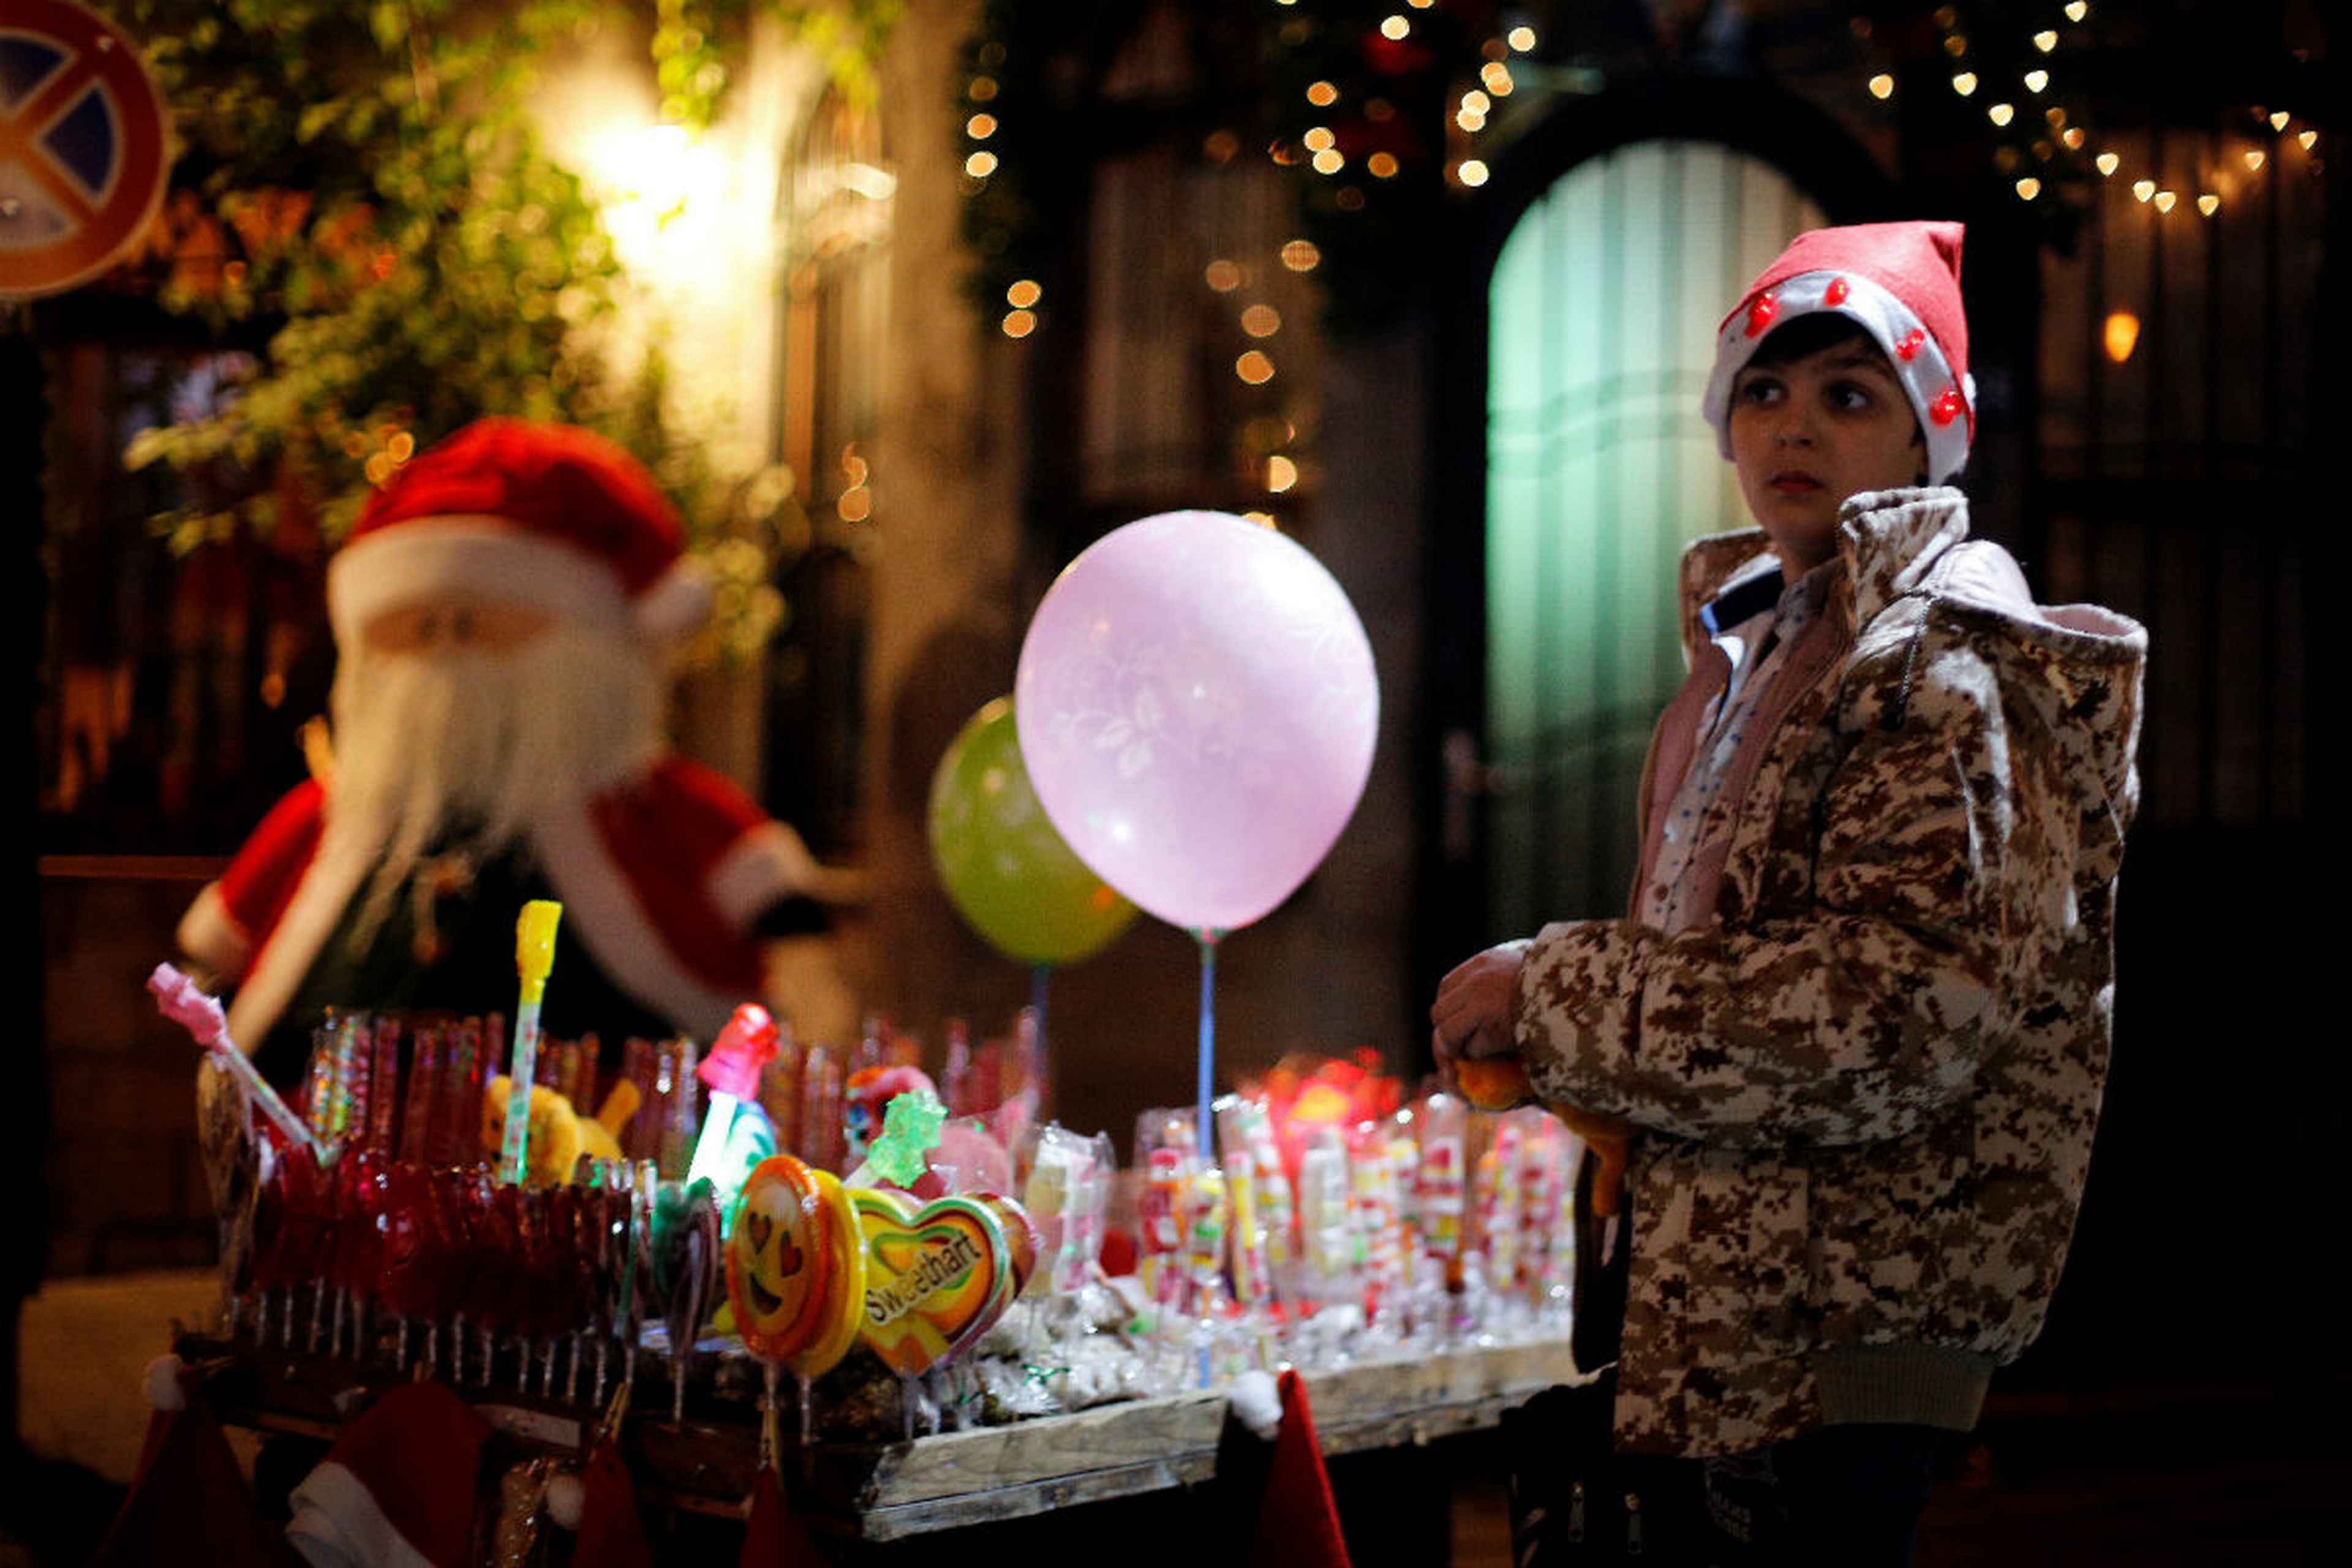 En diciembre, los españoles nos gastamos 11,30 euros de media en dulces navideños...